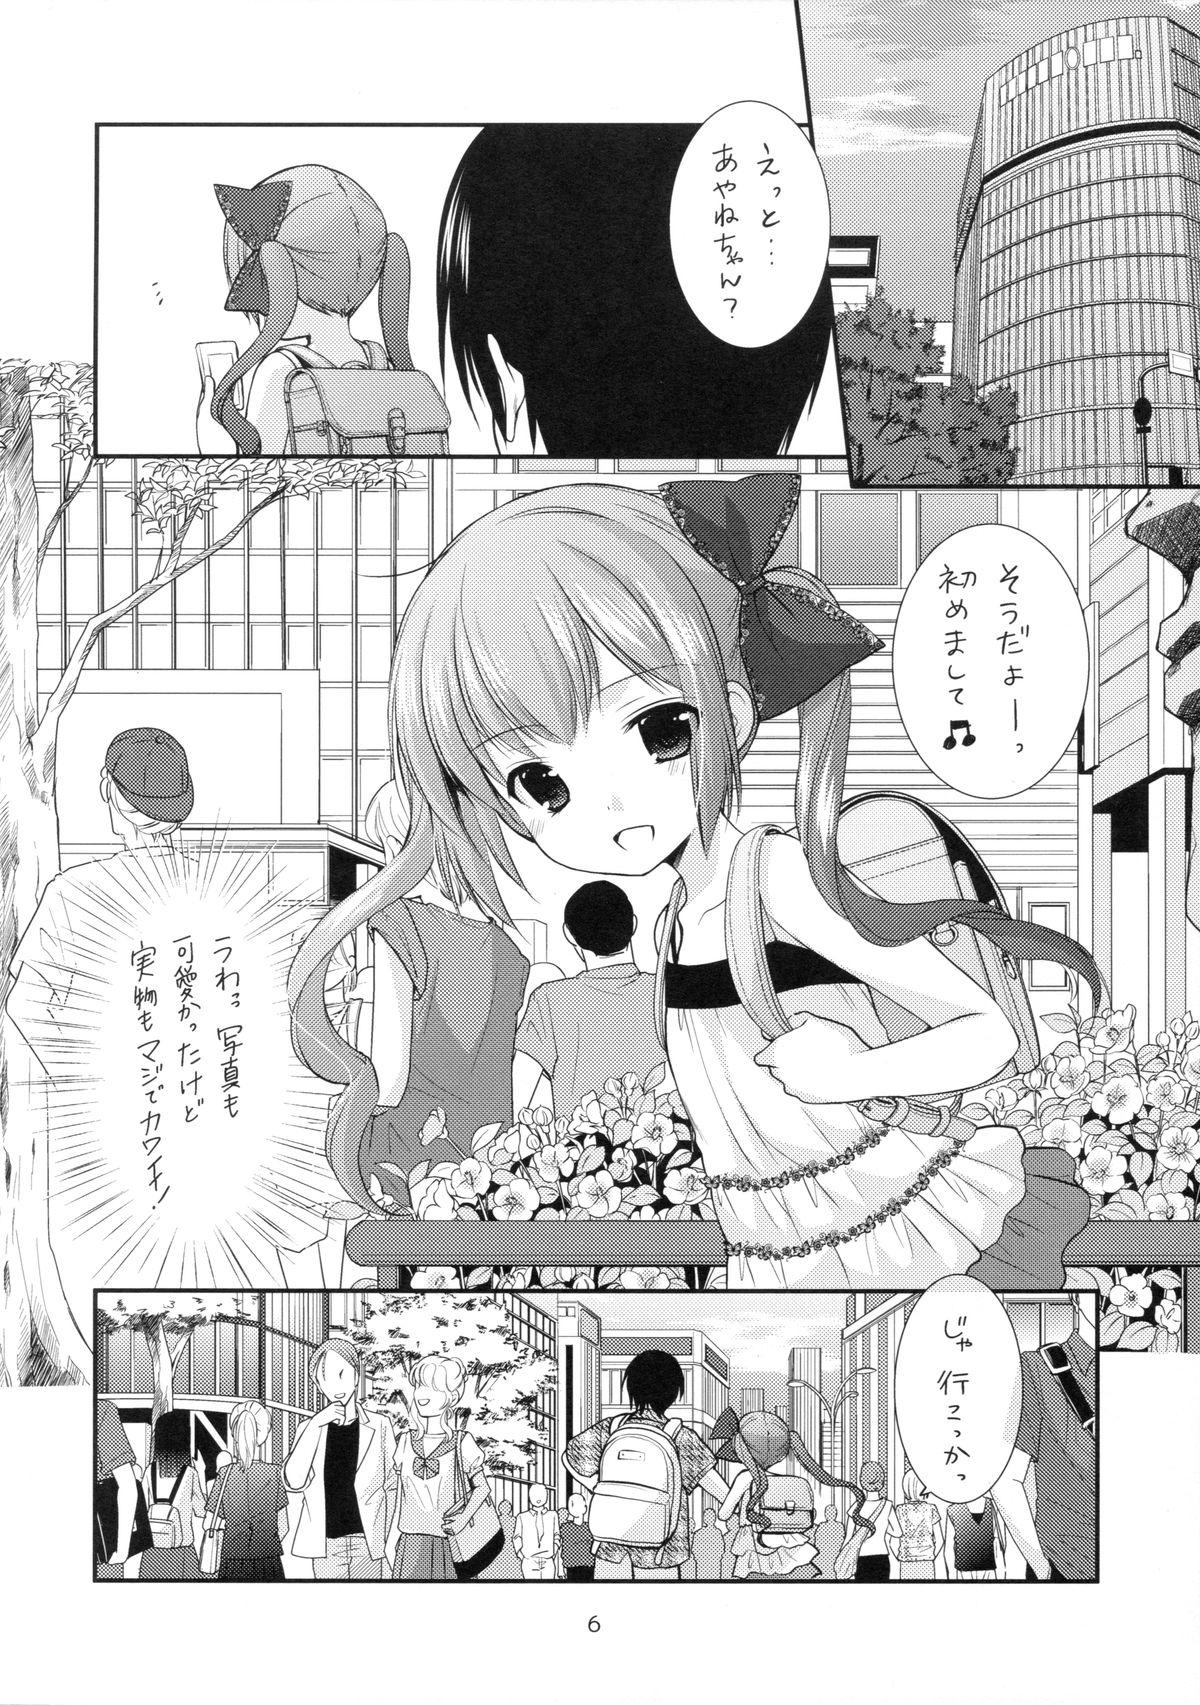 Puba Ikkai 500 Yen Spread - Page 5